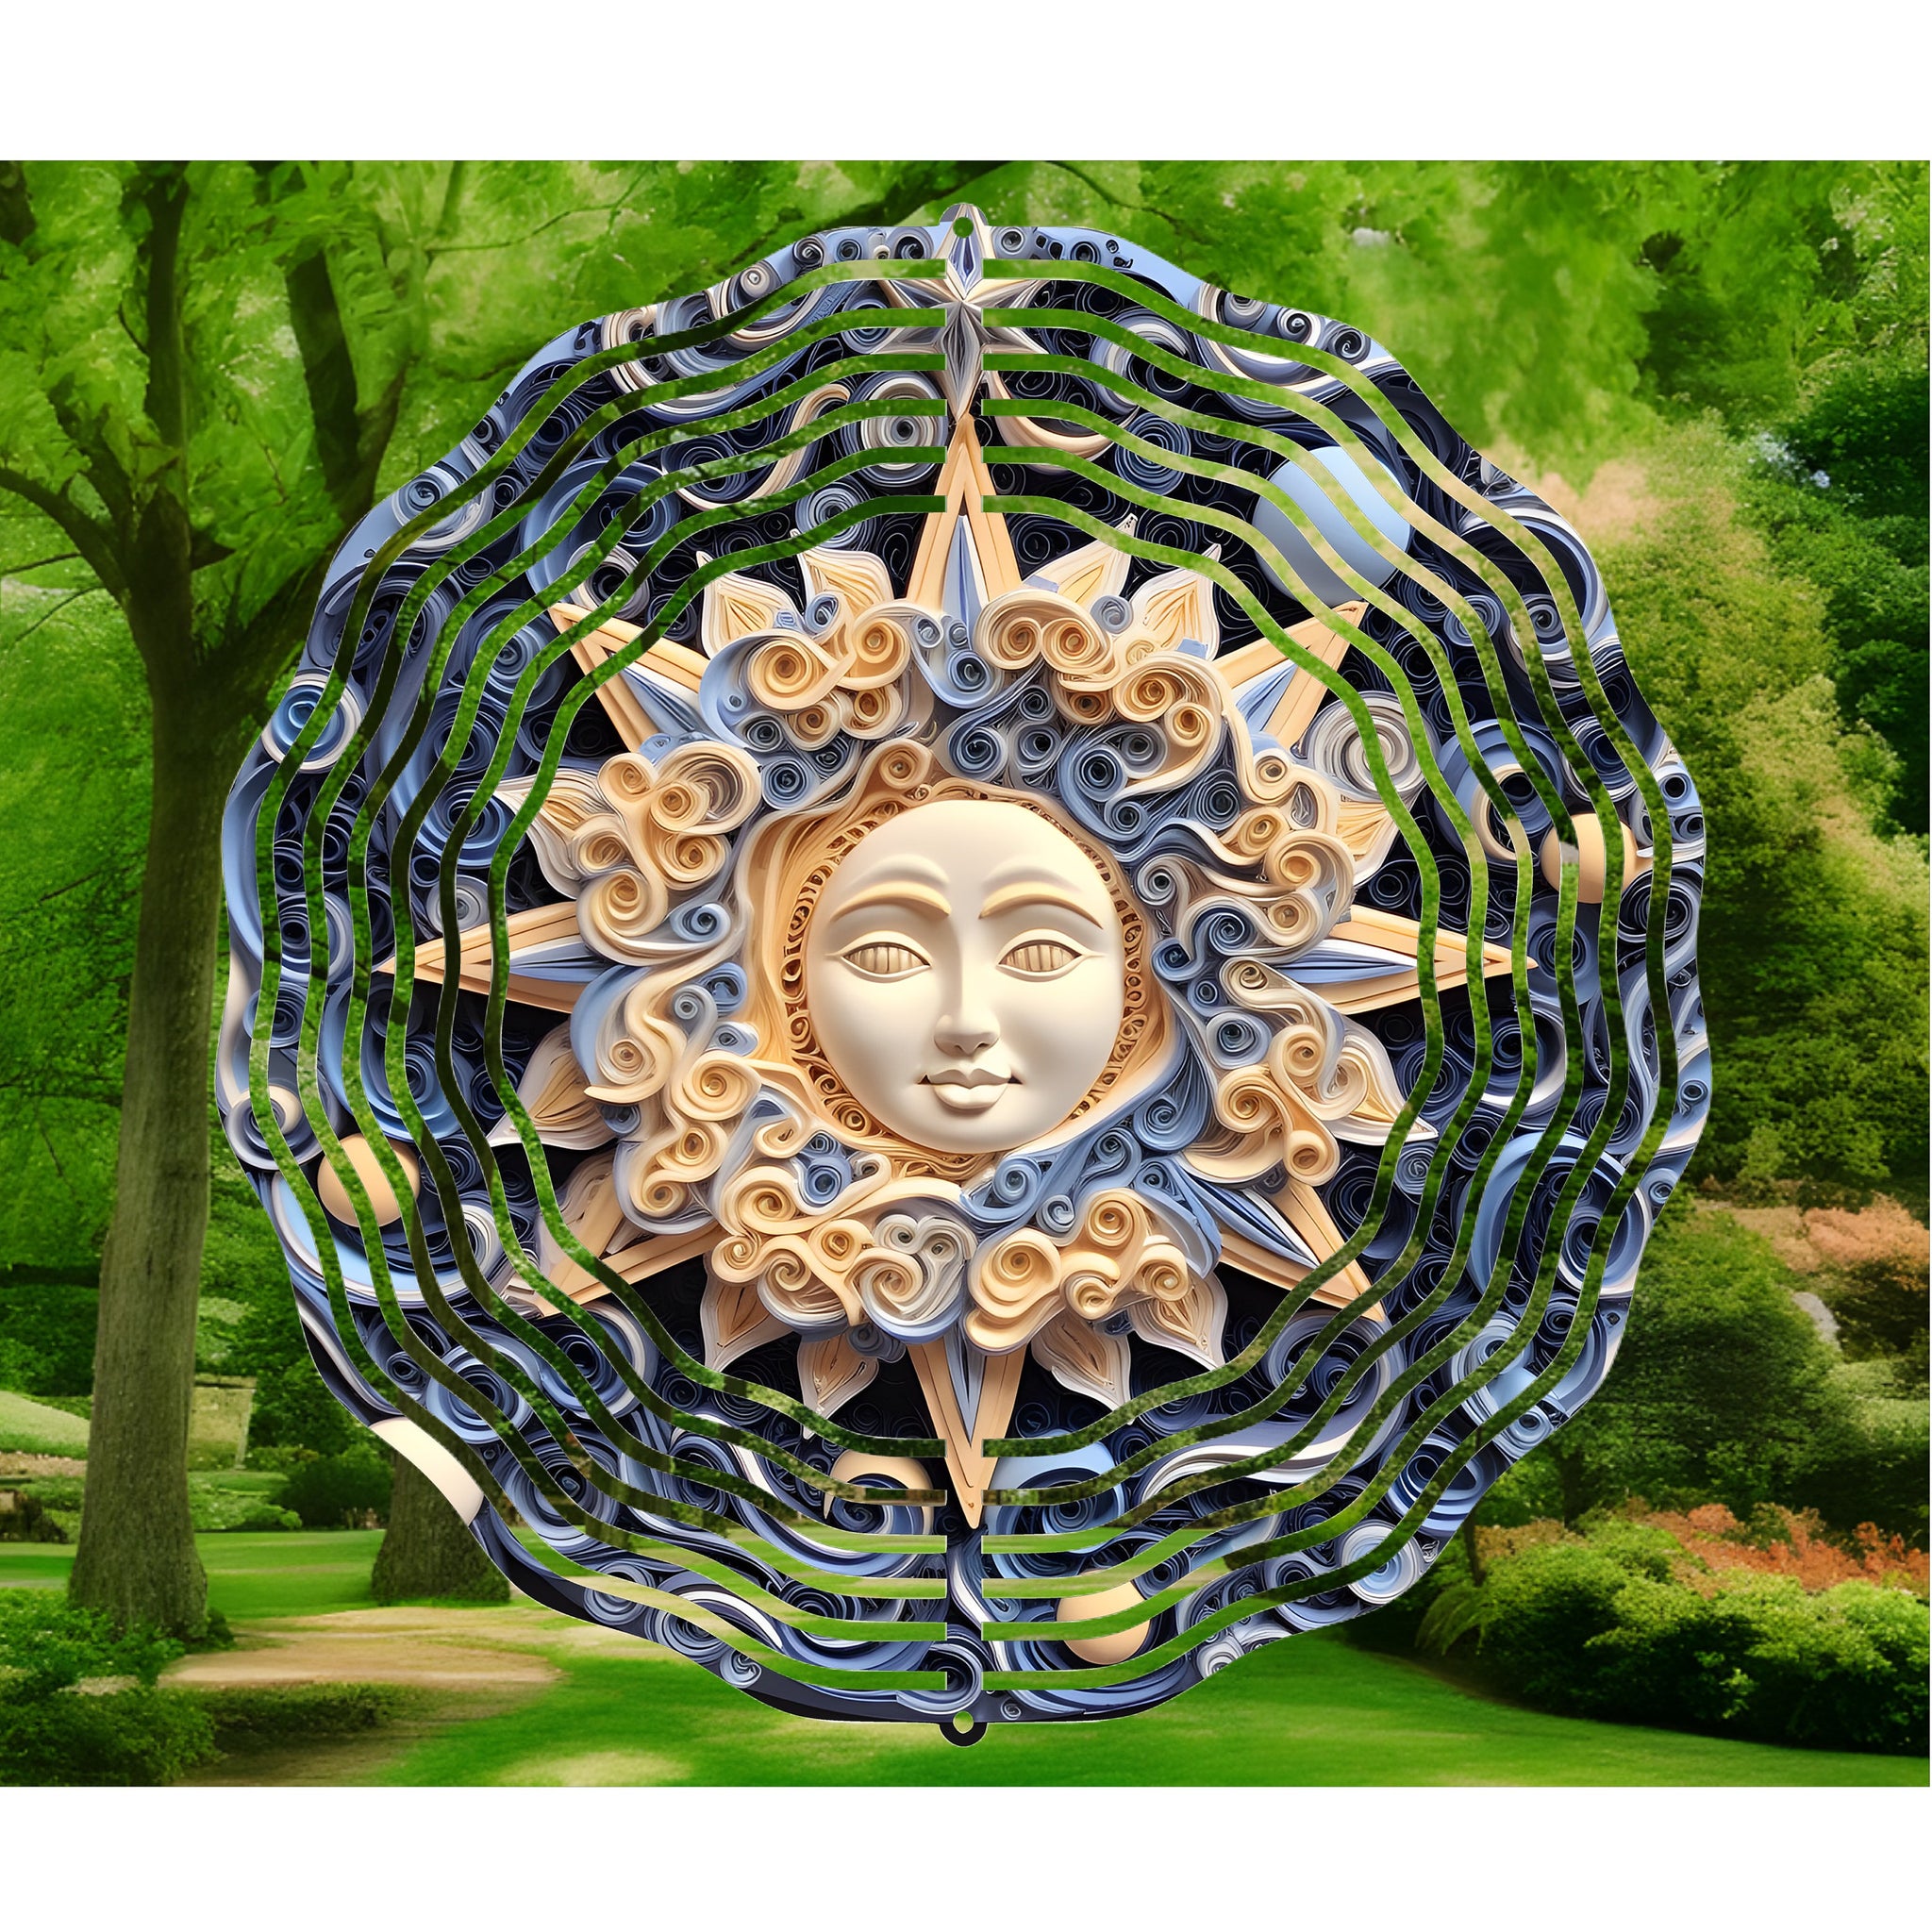 3D Sun Wind Spinner, Quill Sun, Wind Spinners, Yard Art, Garden Decorations